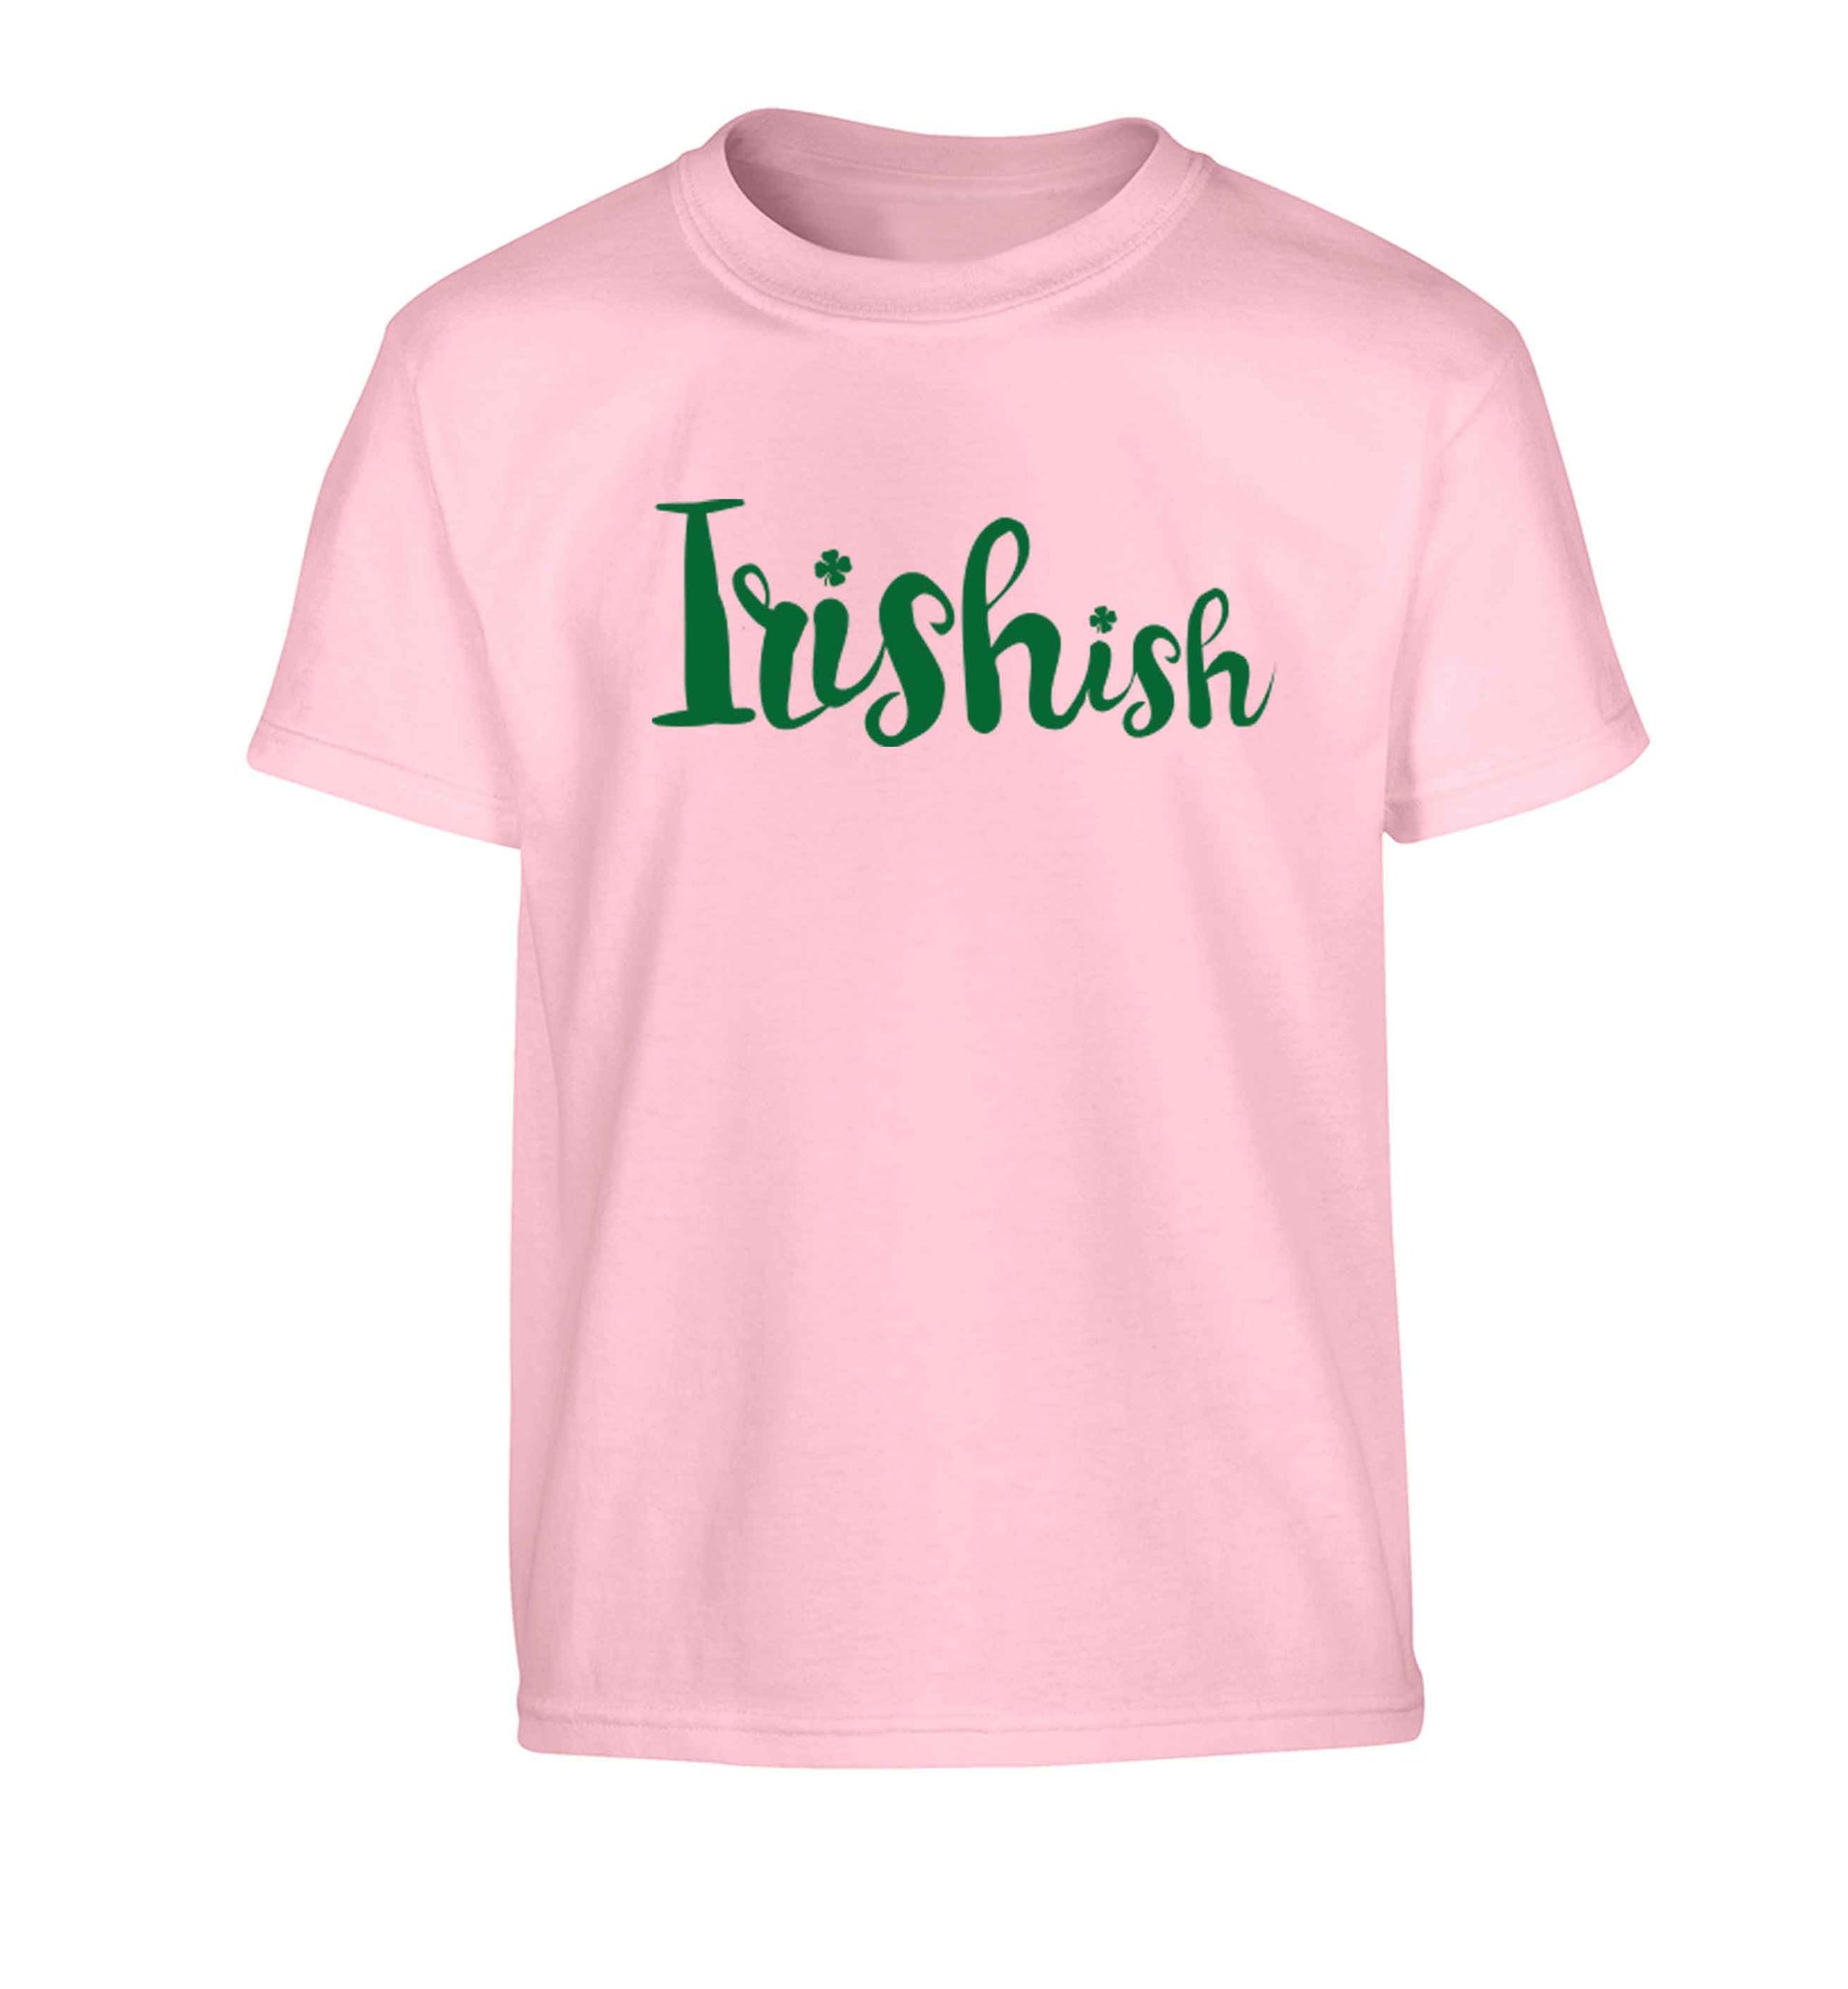 Irishish Children's light pink Tshirt 12-13 Years